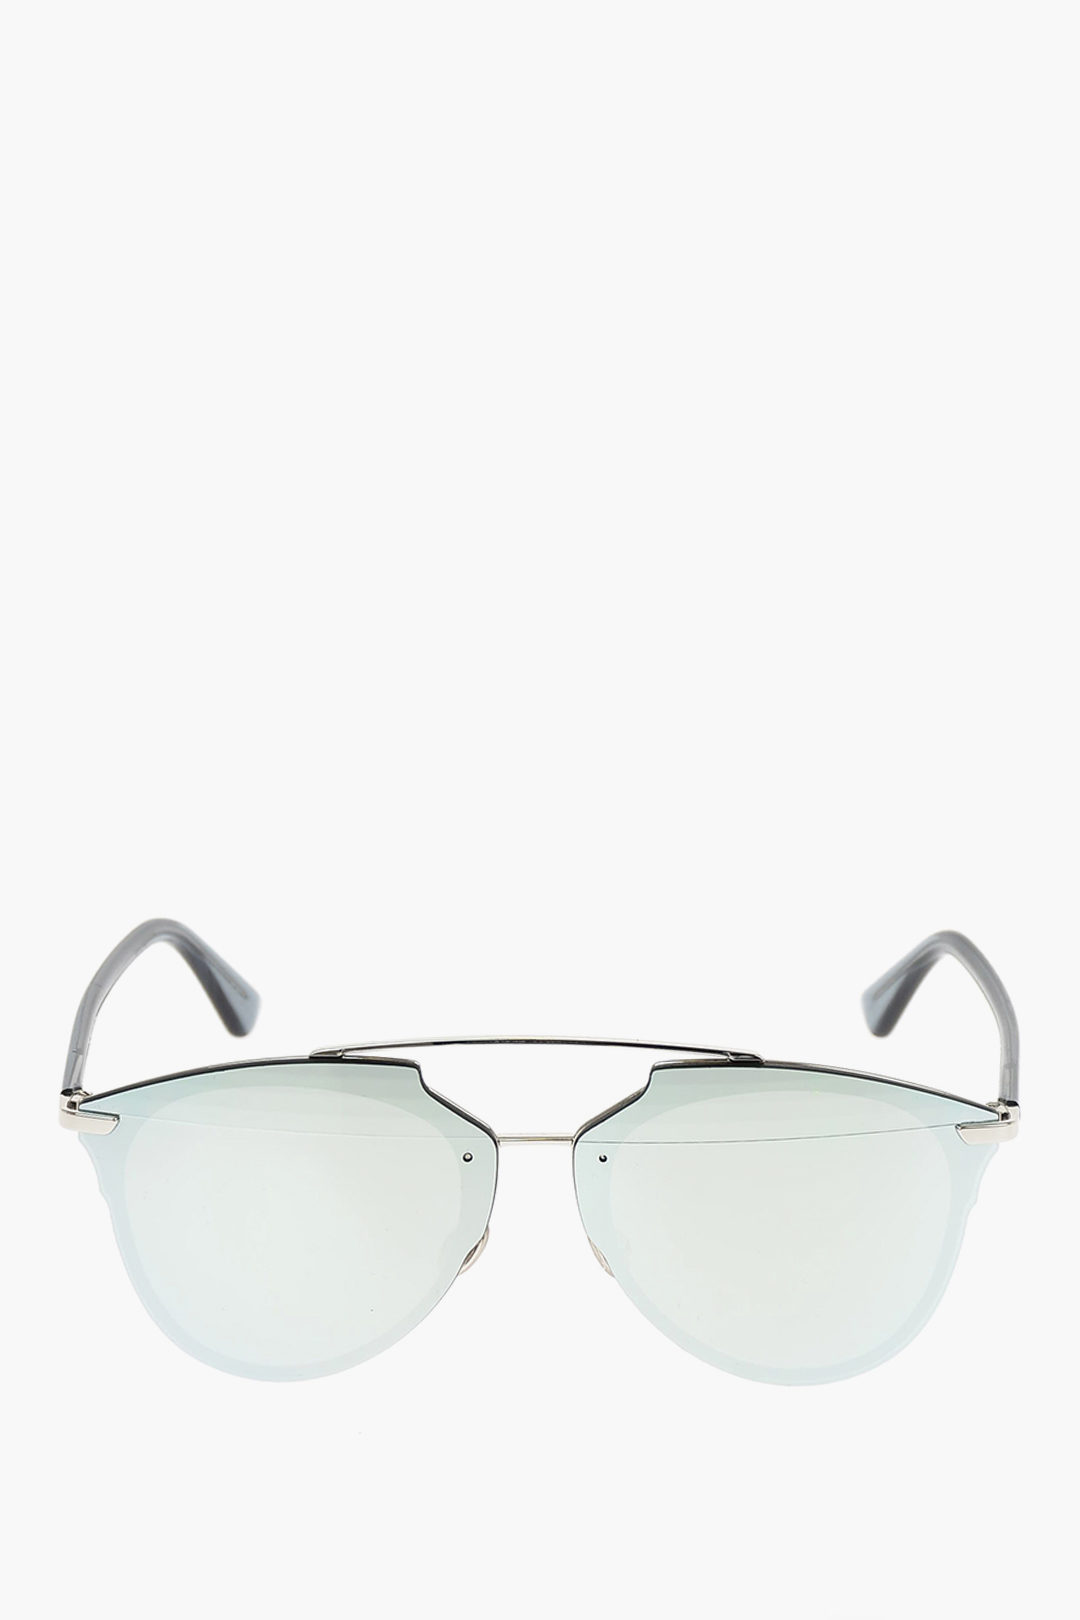 PreOwned Christian Dior Split 2 Aviator Sunglasses  Sabrinas Closet